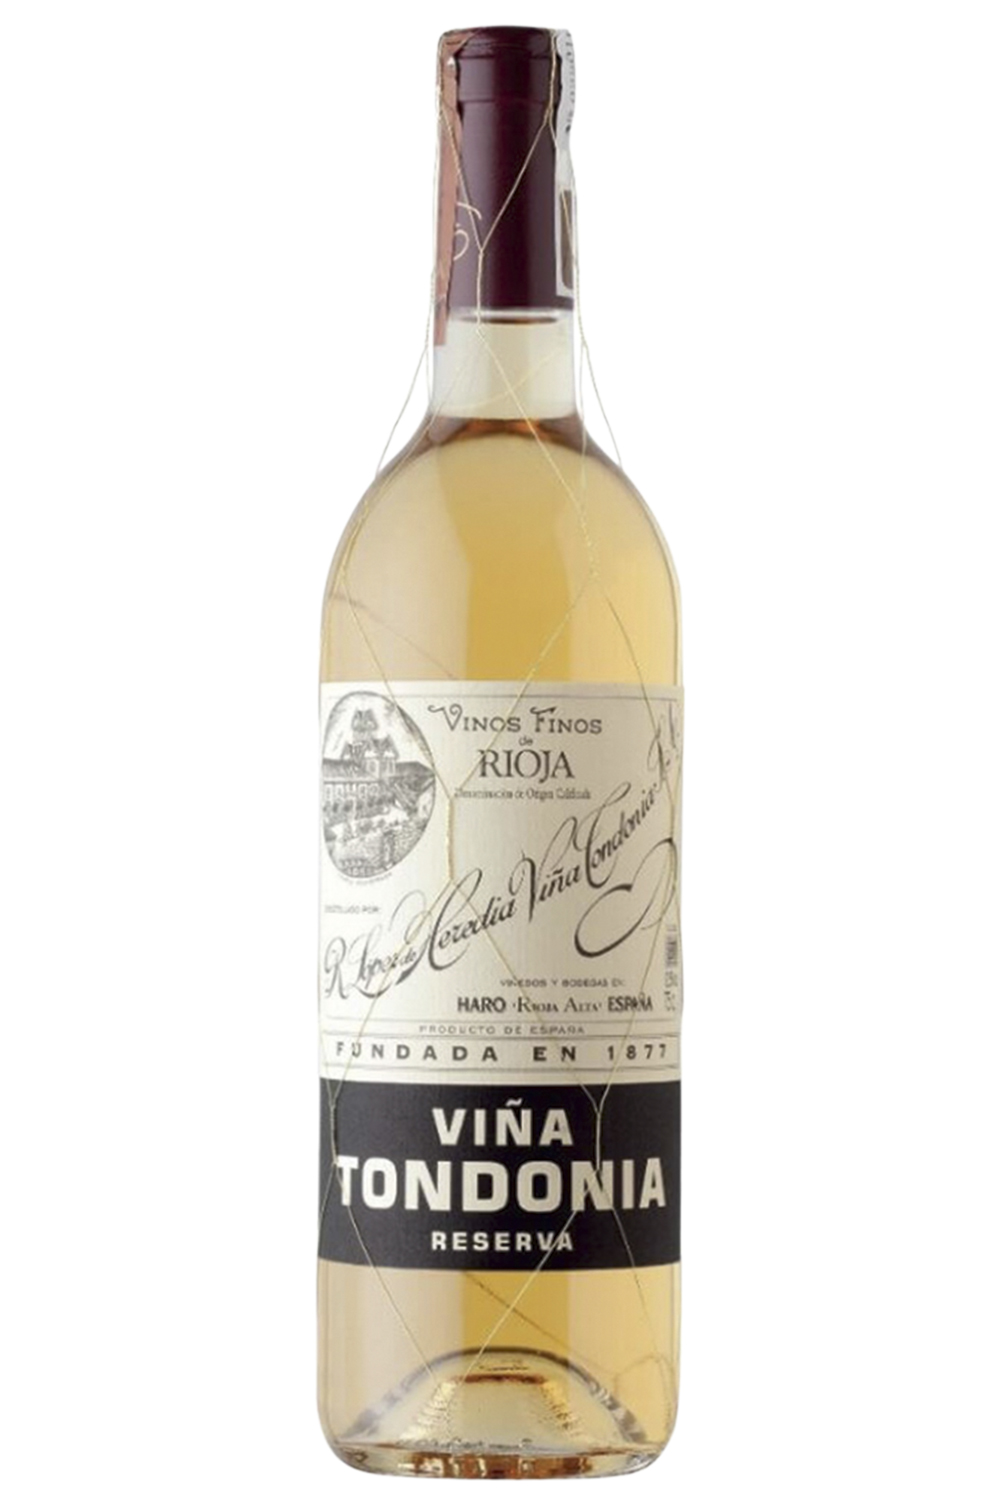 TONDONIA RESERVA - Blend de malvasia e viura, é feito em pequenas quantidades por uma das principais vinícolas de Rioja, na Espanha